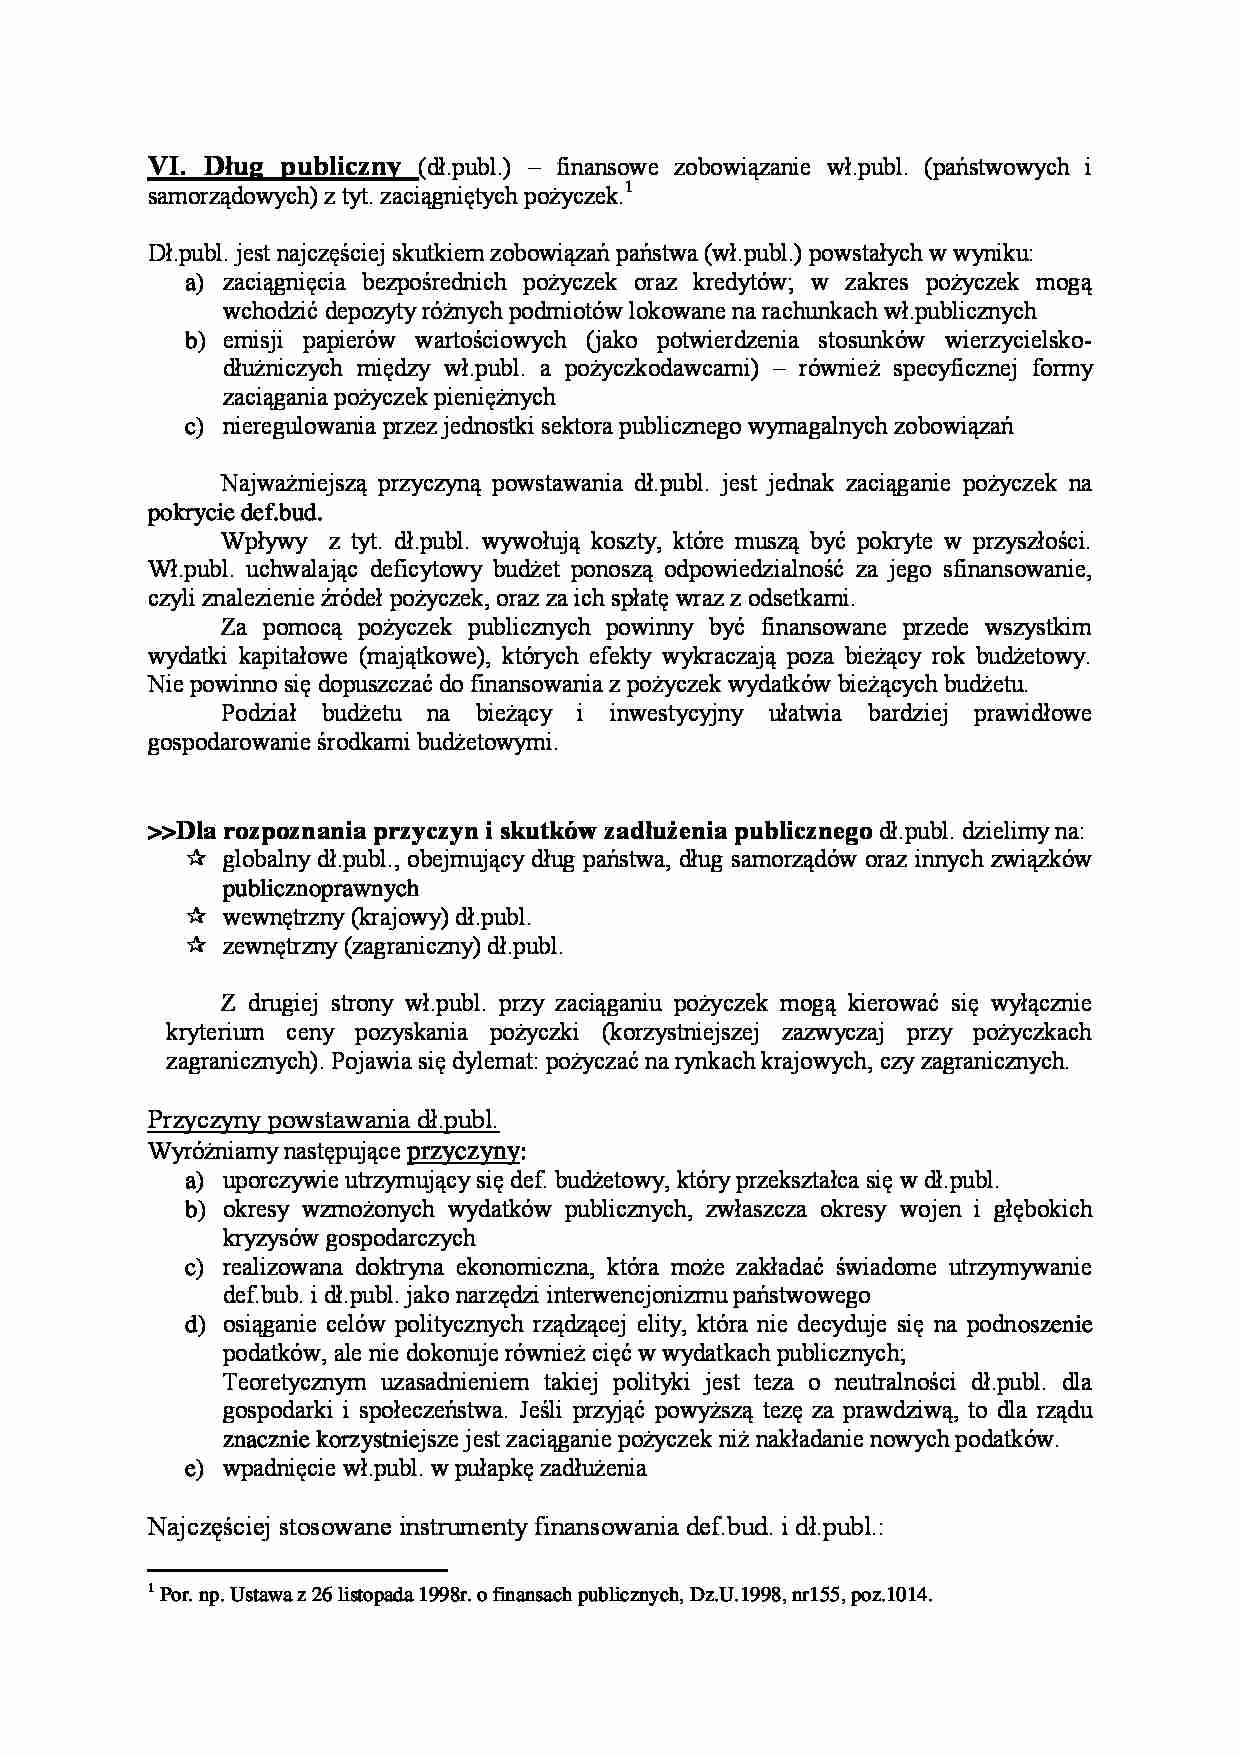 Dług publiczny -finansowe zobowiązanie wł.publ.  - strona 1